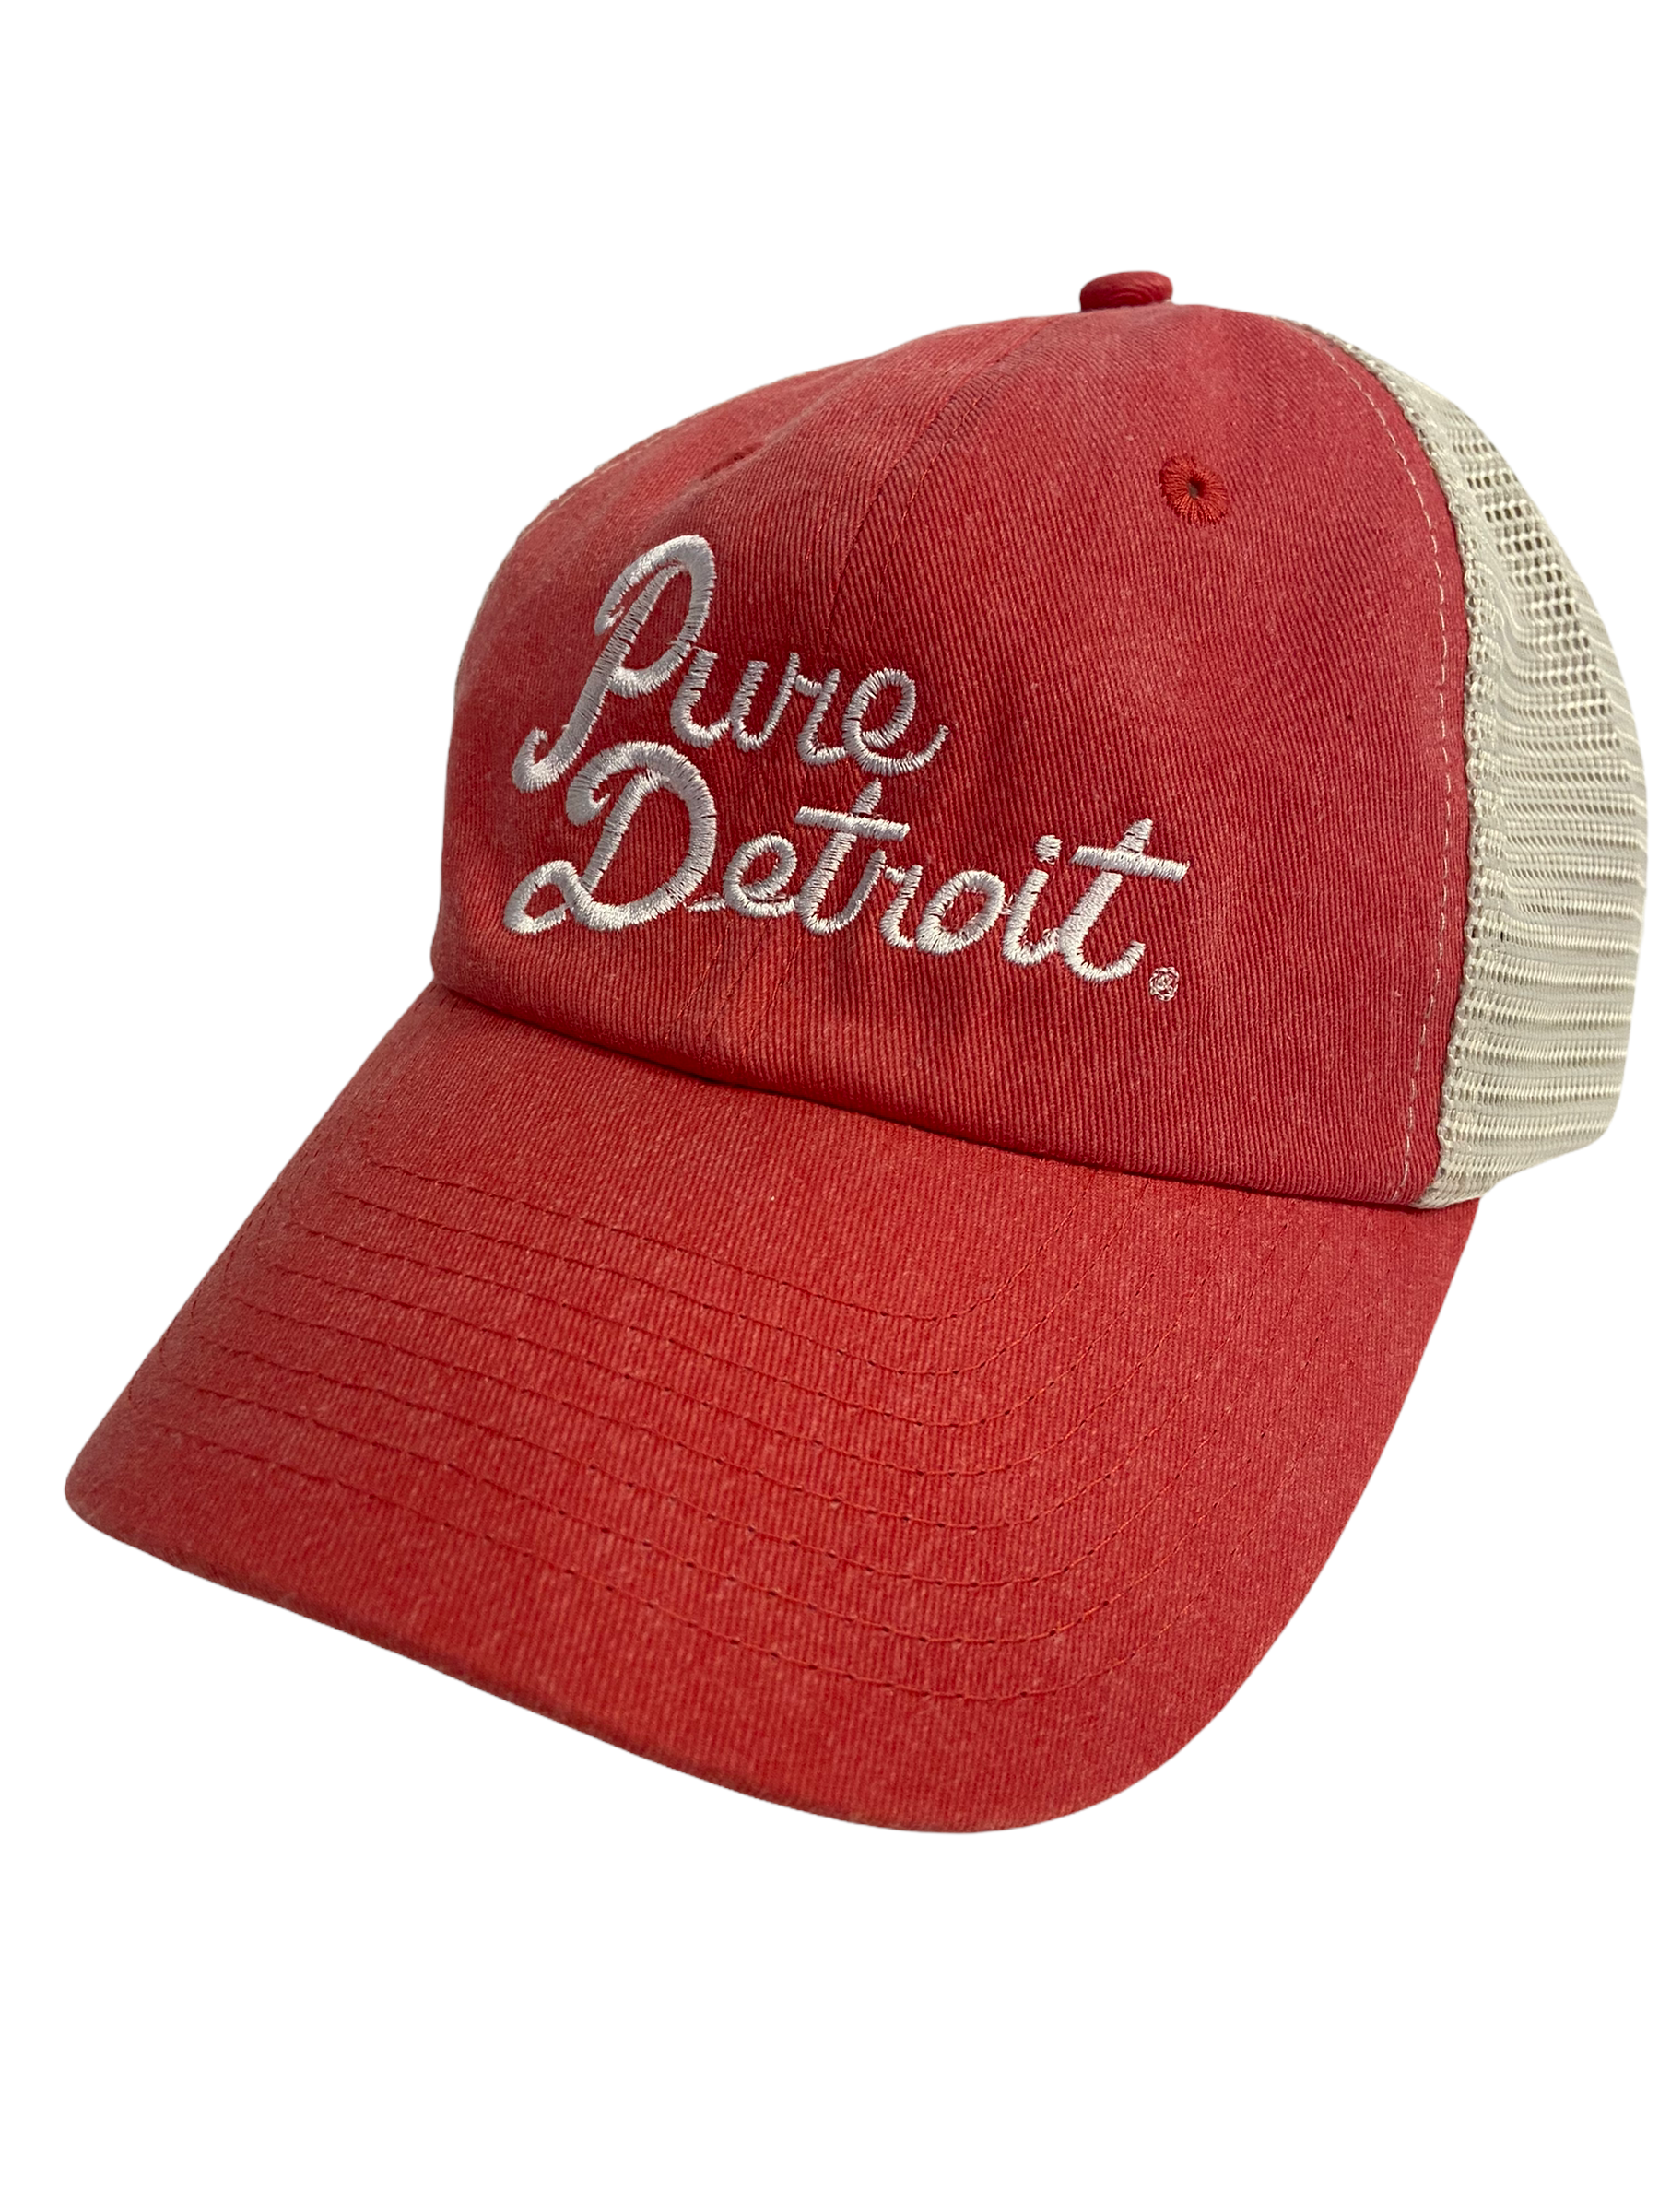 Pure Detroit Script Trucker Adjustable Hat / Unisex Hat White/Coral  